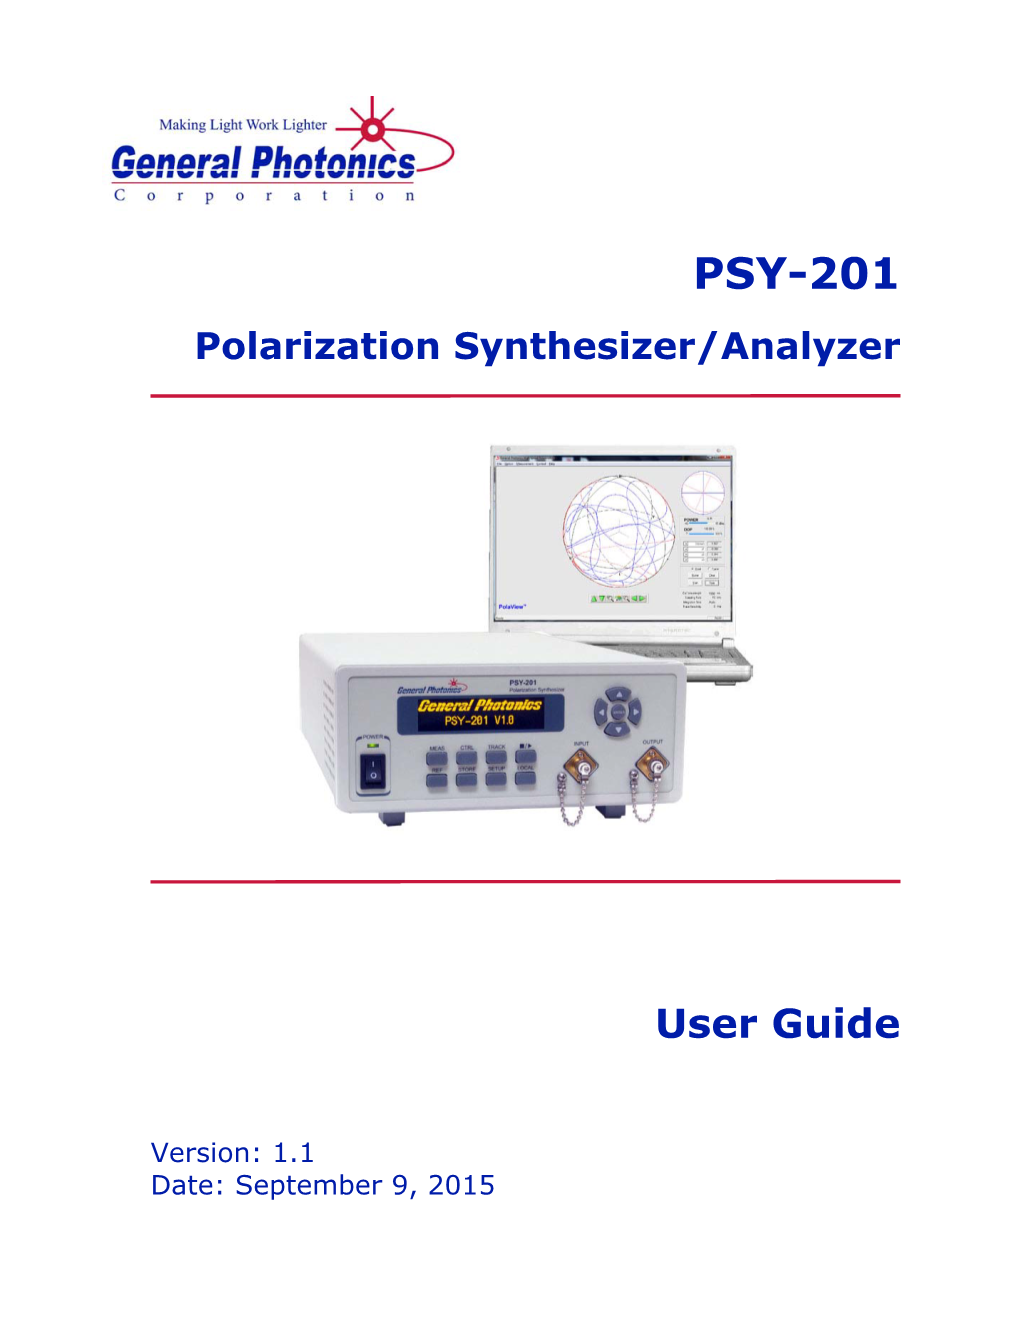 PSY-201 User Guide